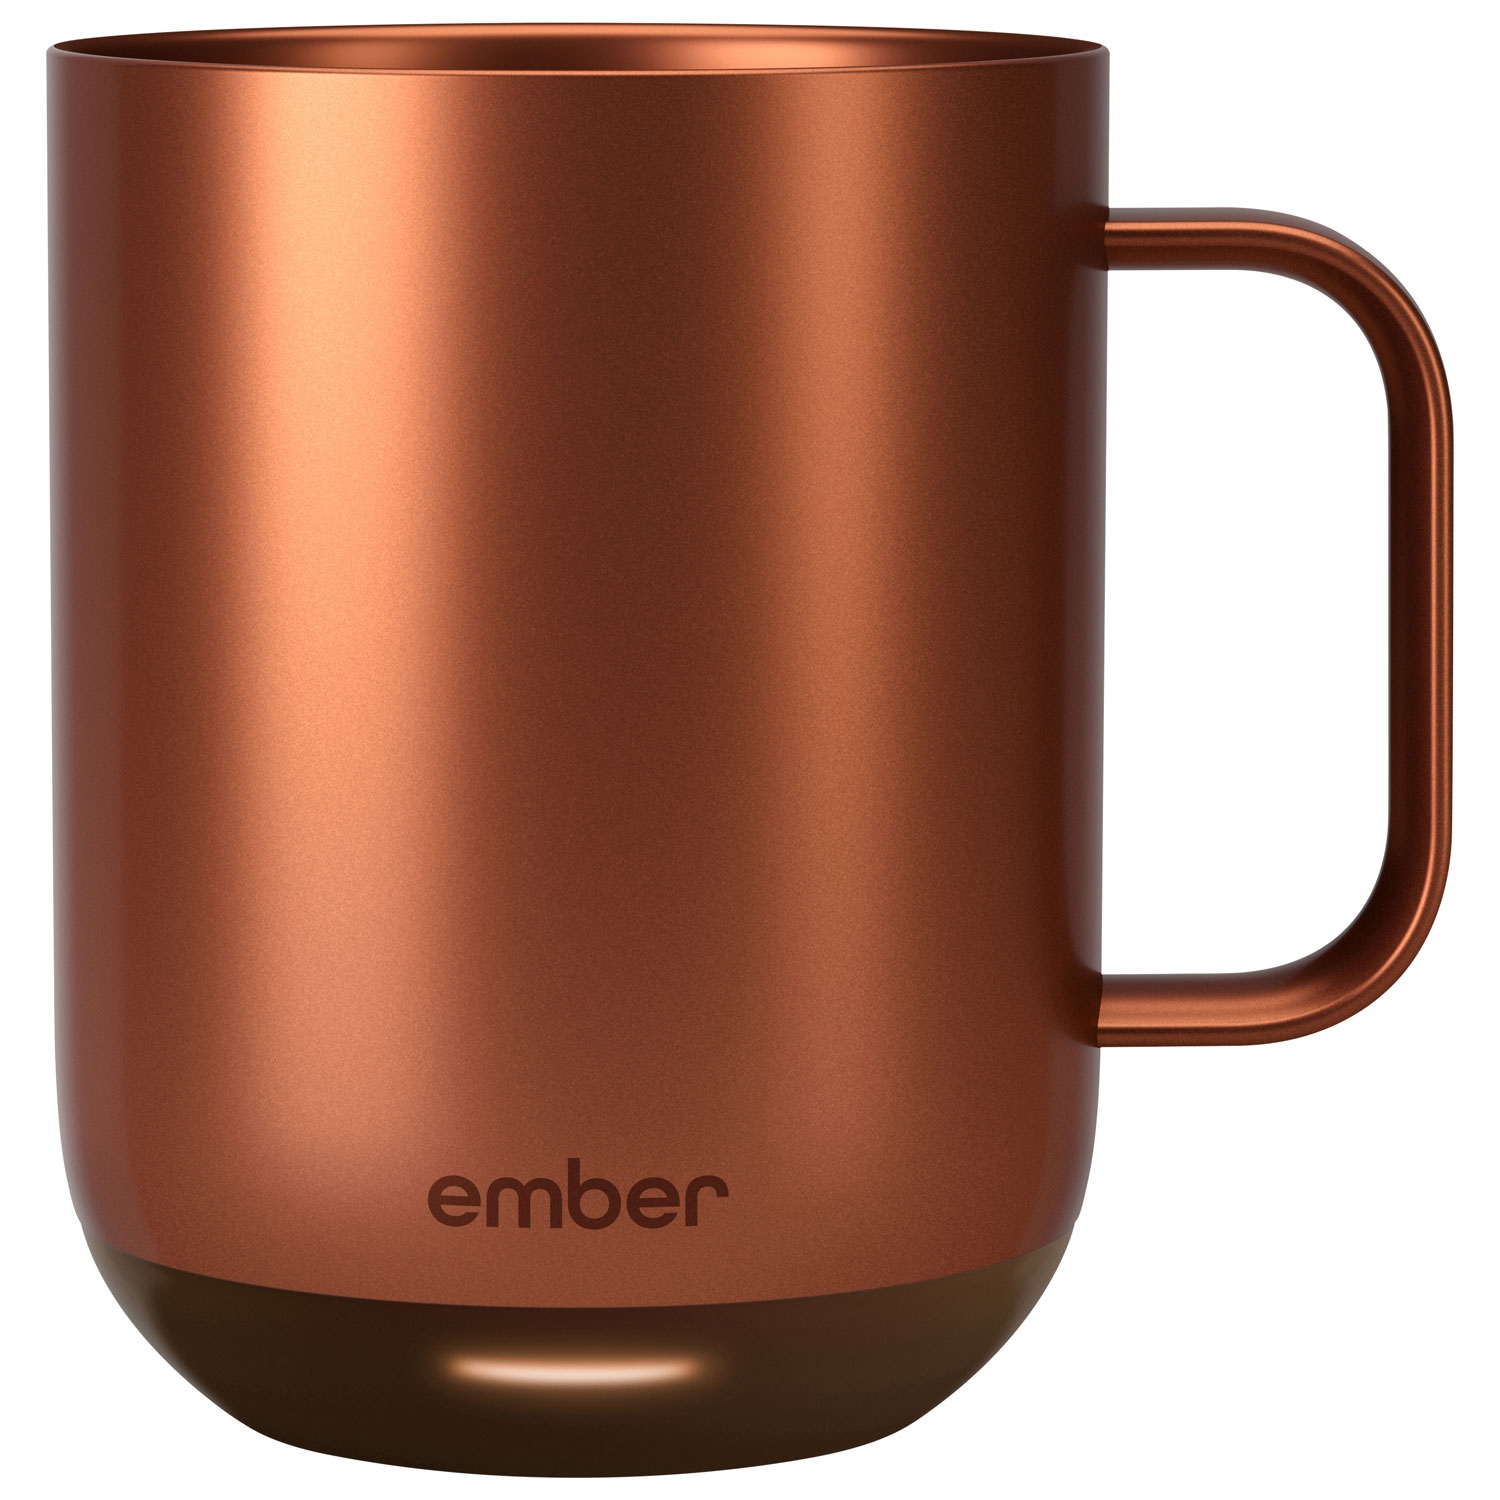 Ember 295ml (10 oz.) Smart Temperature Control Mug 2 - Copper